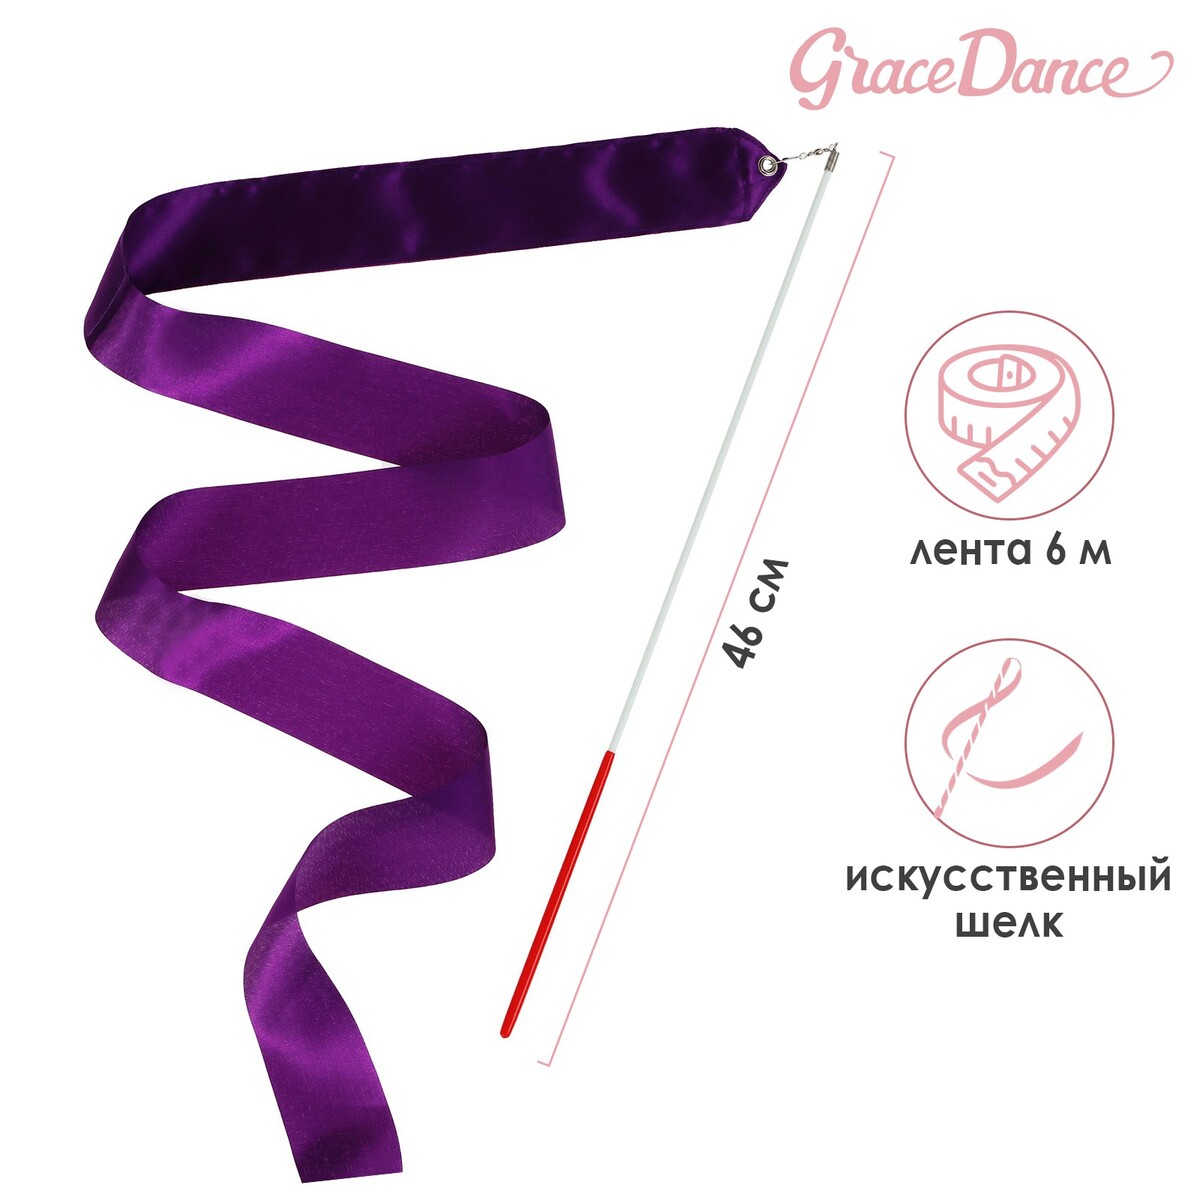 Лента для художественной гимнастики с палочкой grace dance, 6 м, цвет фиолетовый лента гимнастическая с палочкой grace dance 4 м синий